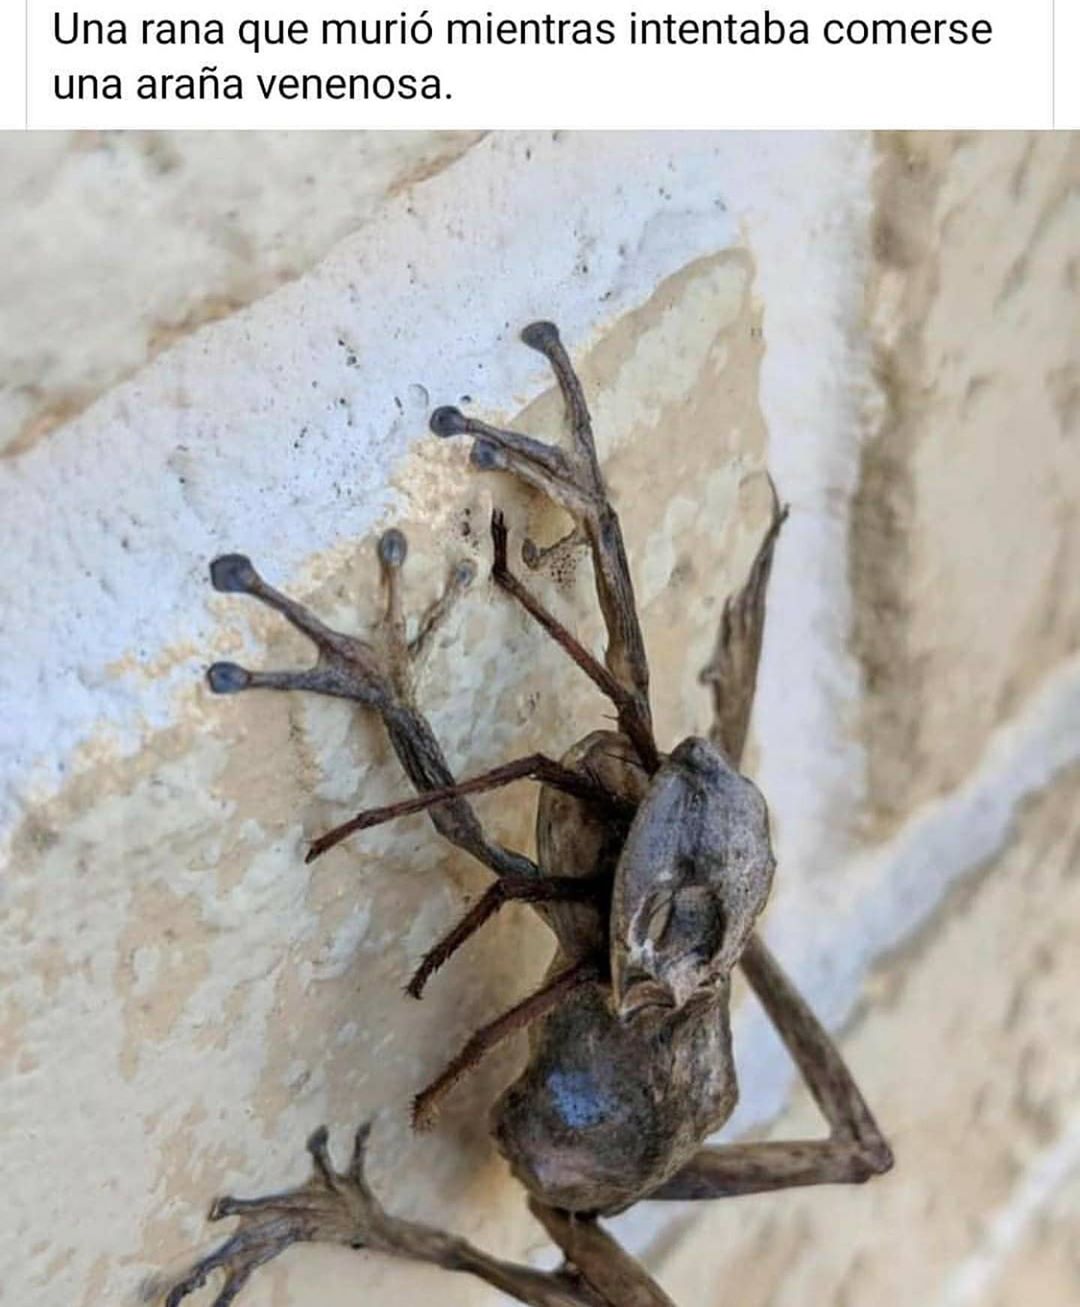 Una rana que murió mientras intentaba comerse una araña venenosa.